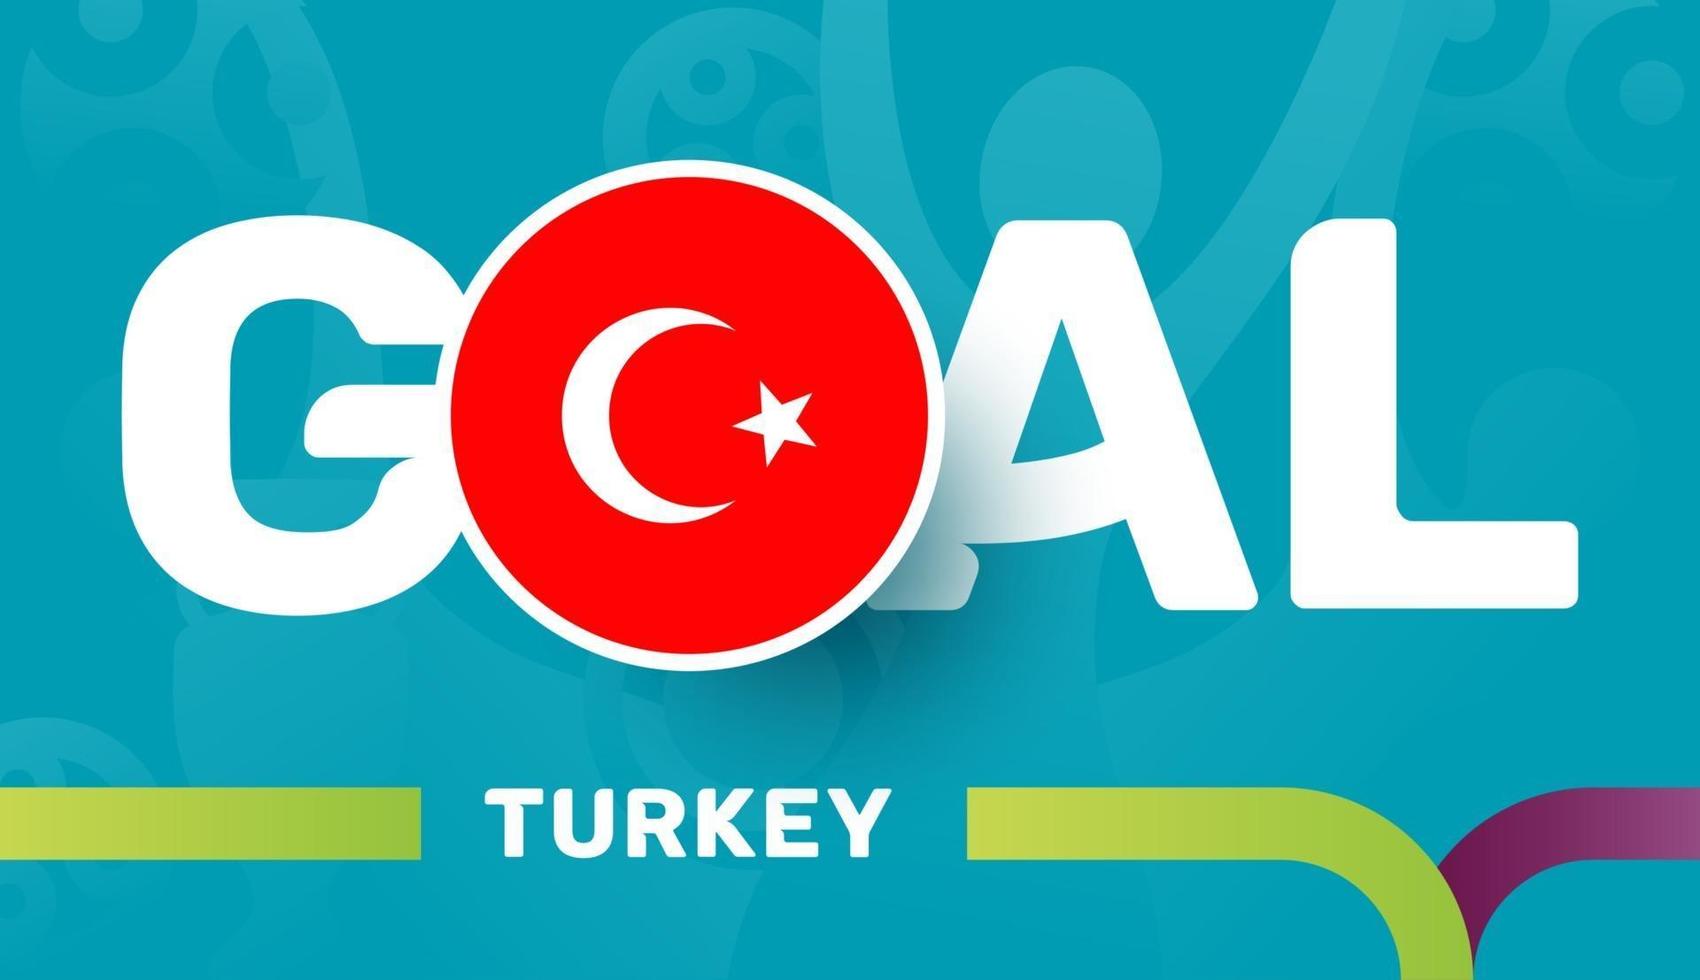 Türkei-Flagge und Slogan-Ziel auf dem europäischen Fußballhintergrund 2020. Fußballturnier-Vektorillustration vektor